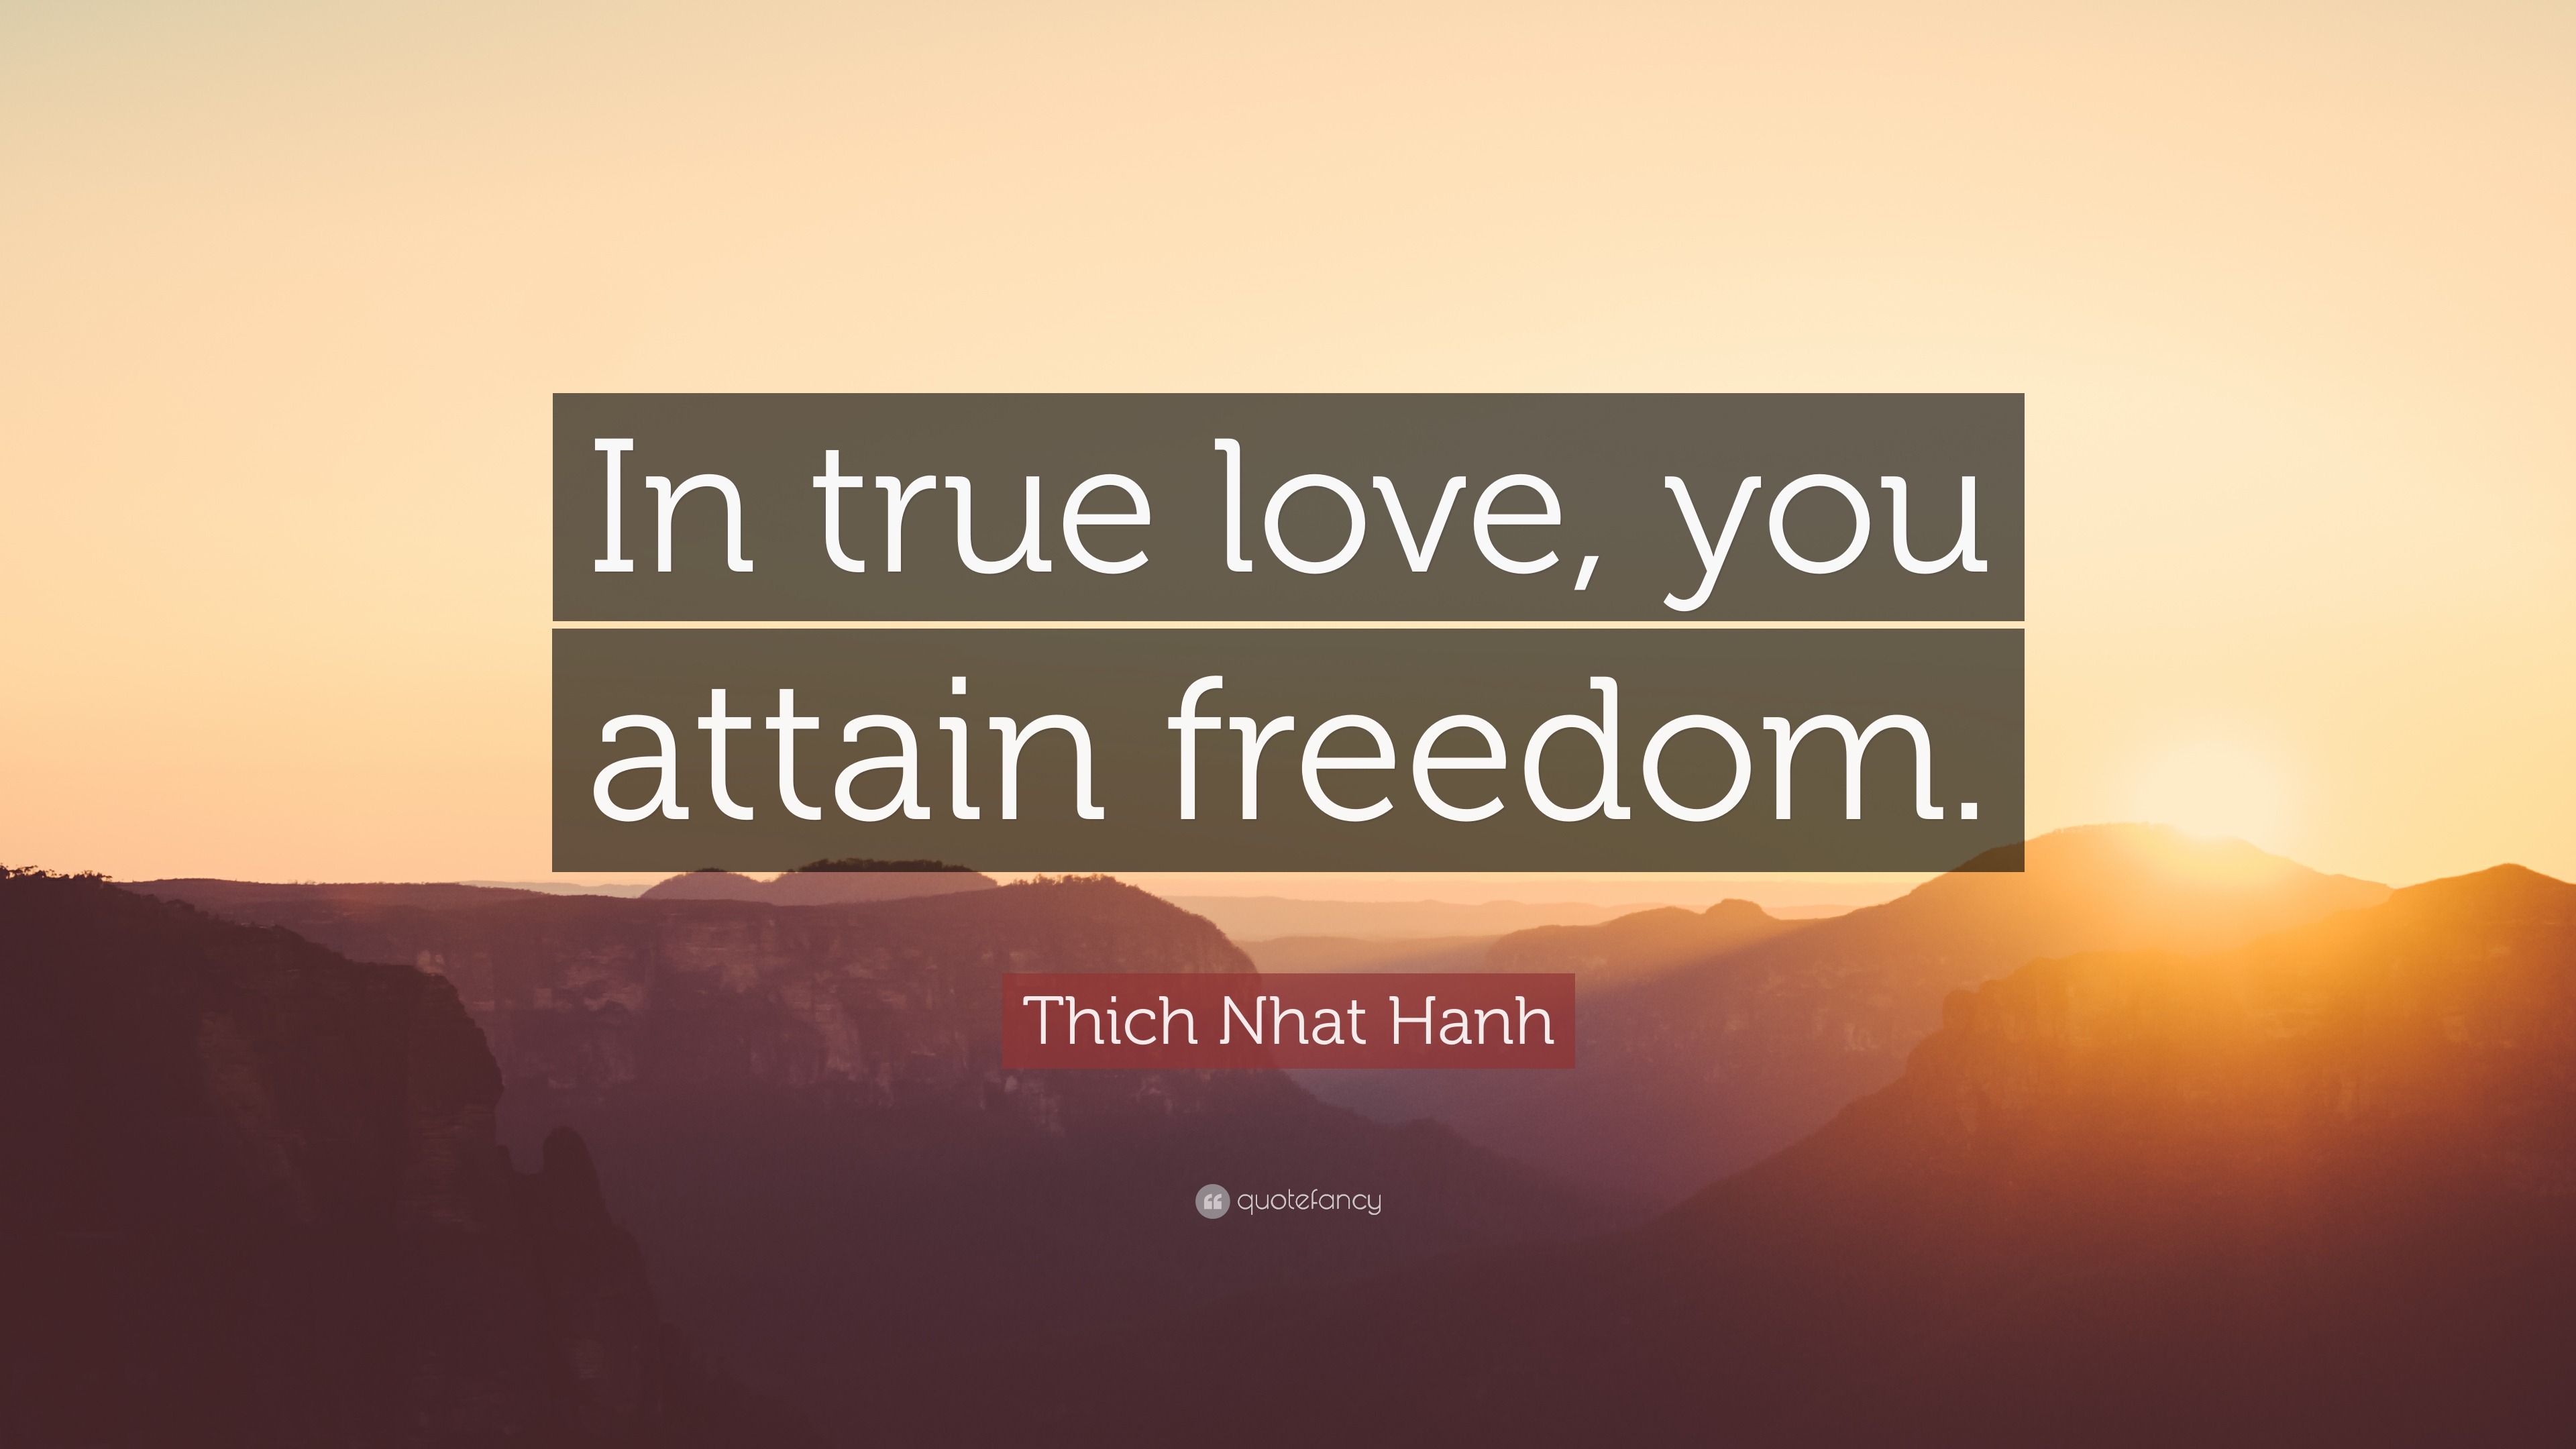 thich nhat hanh true love